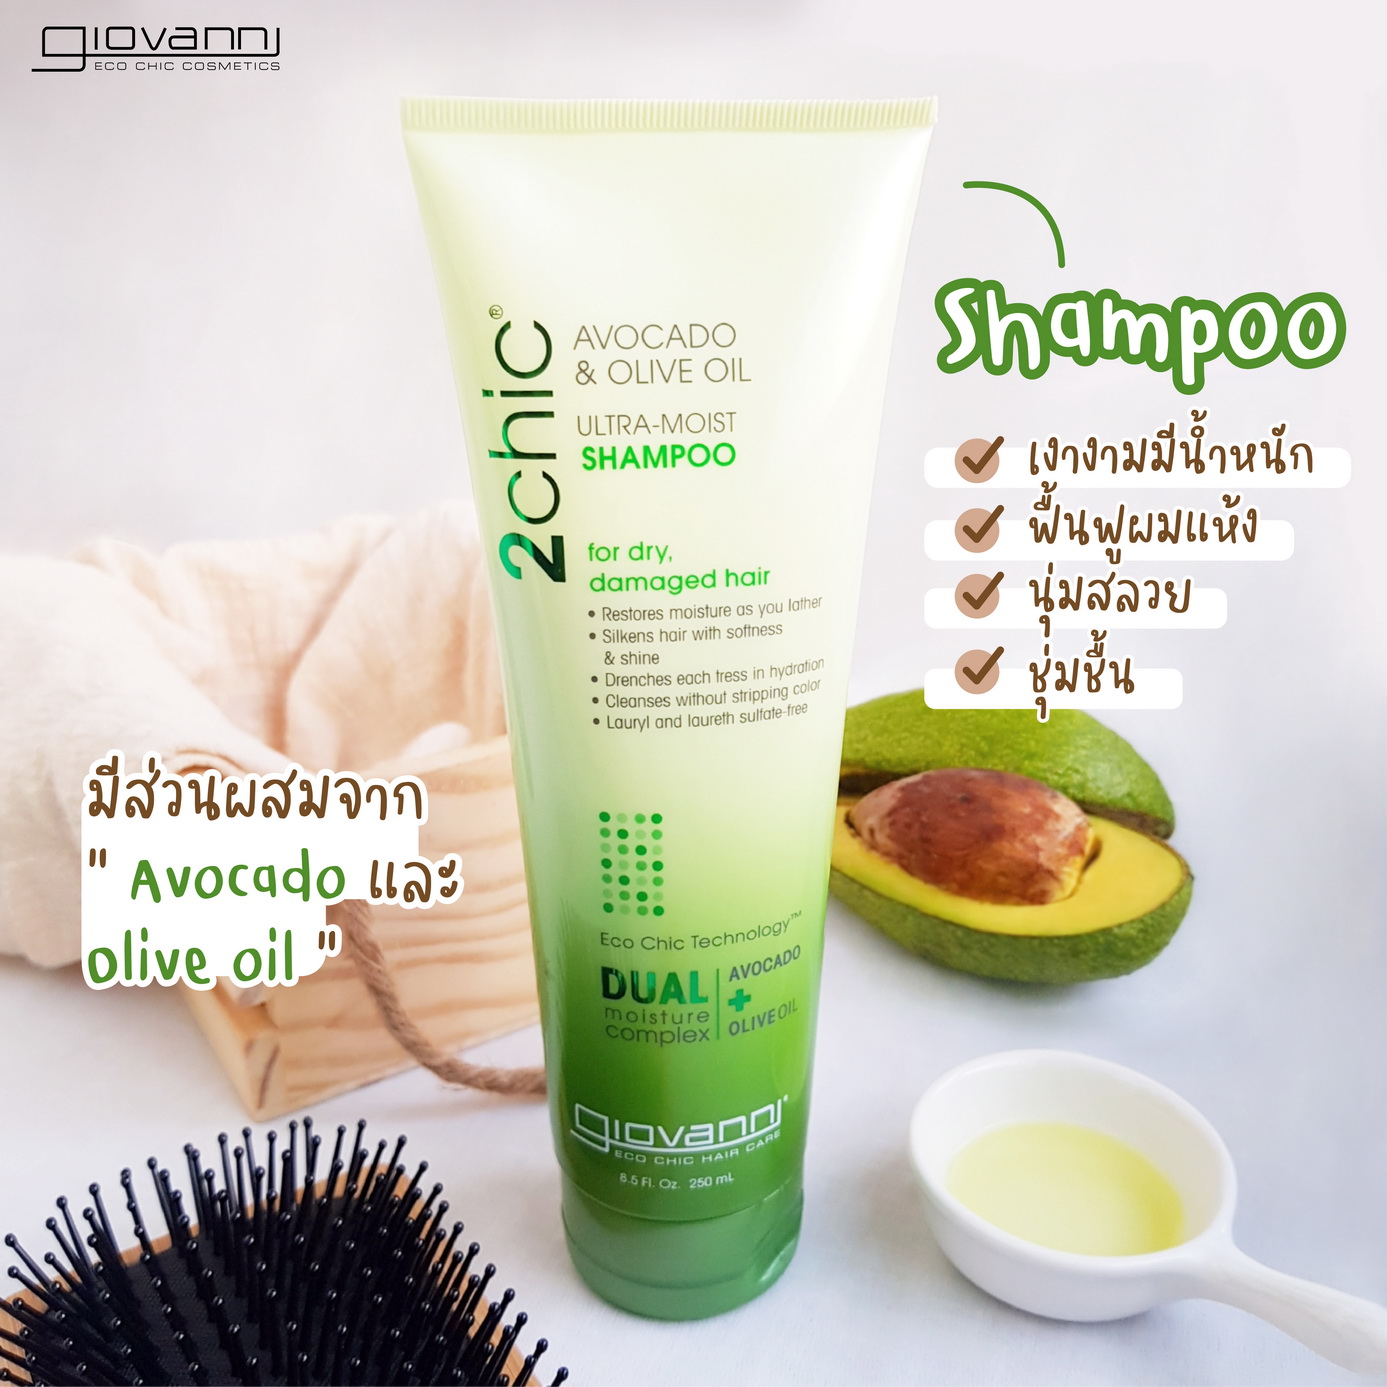 Shampoo - Conditioner - Giovanni - UltraMoist